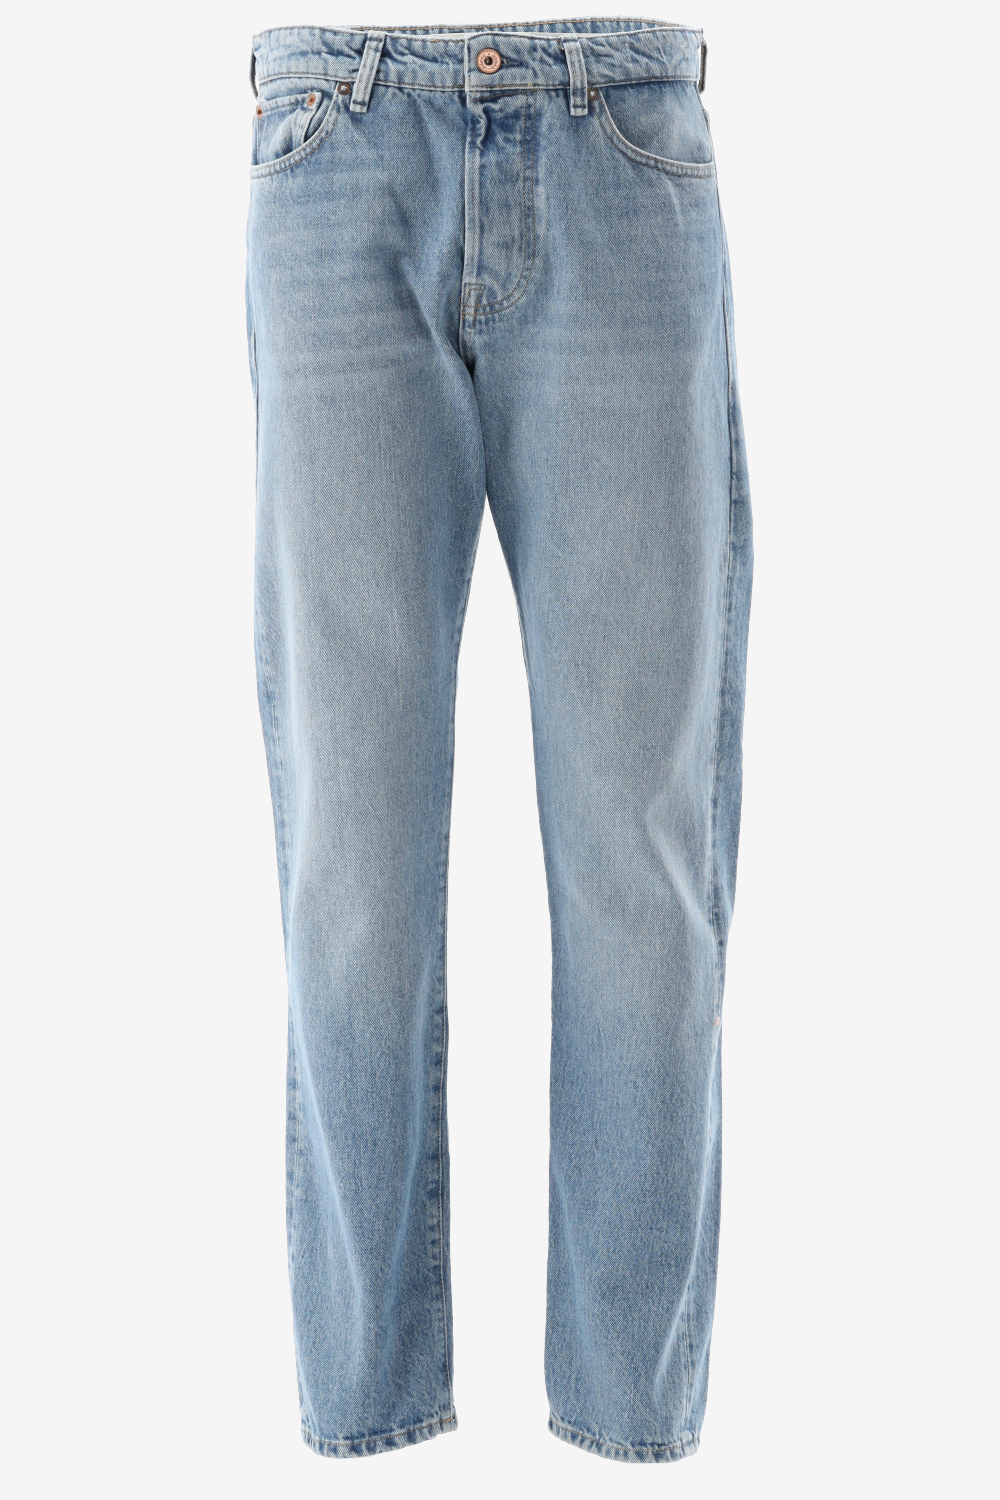 JACK & JONES Chris Cooper 890 Jeans - Heren - Blue - W32 X L34